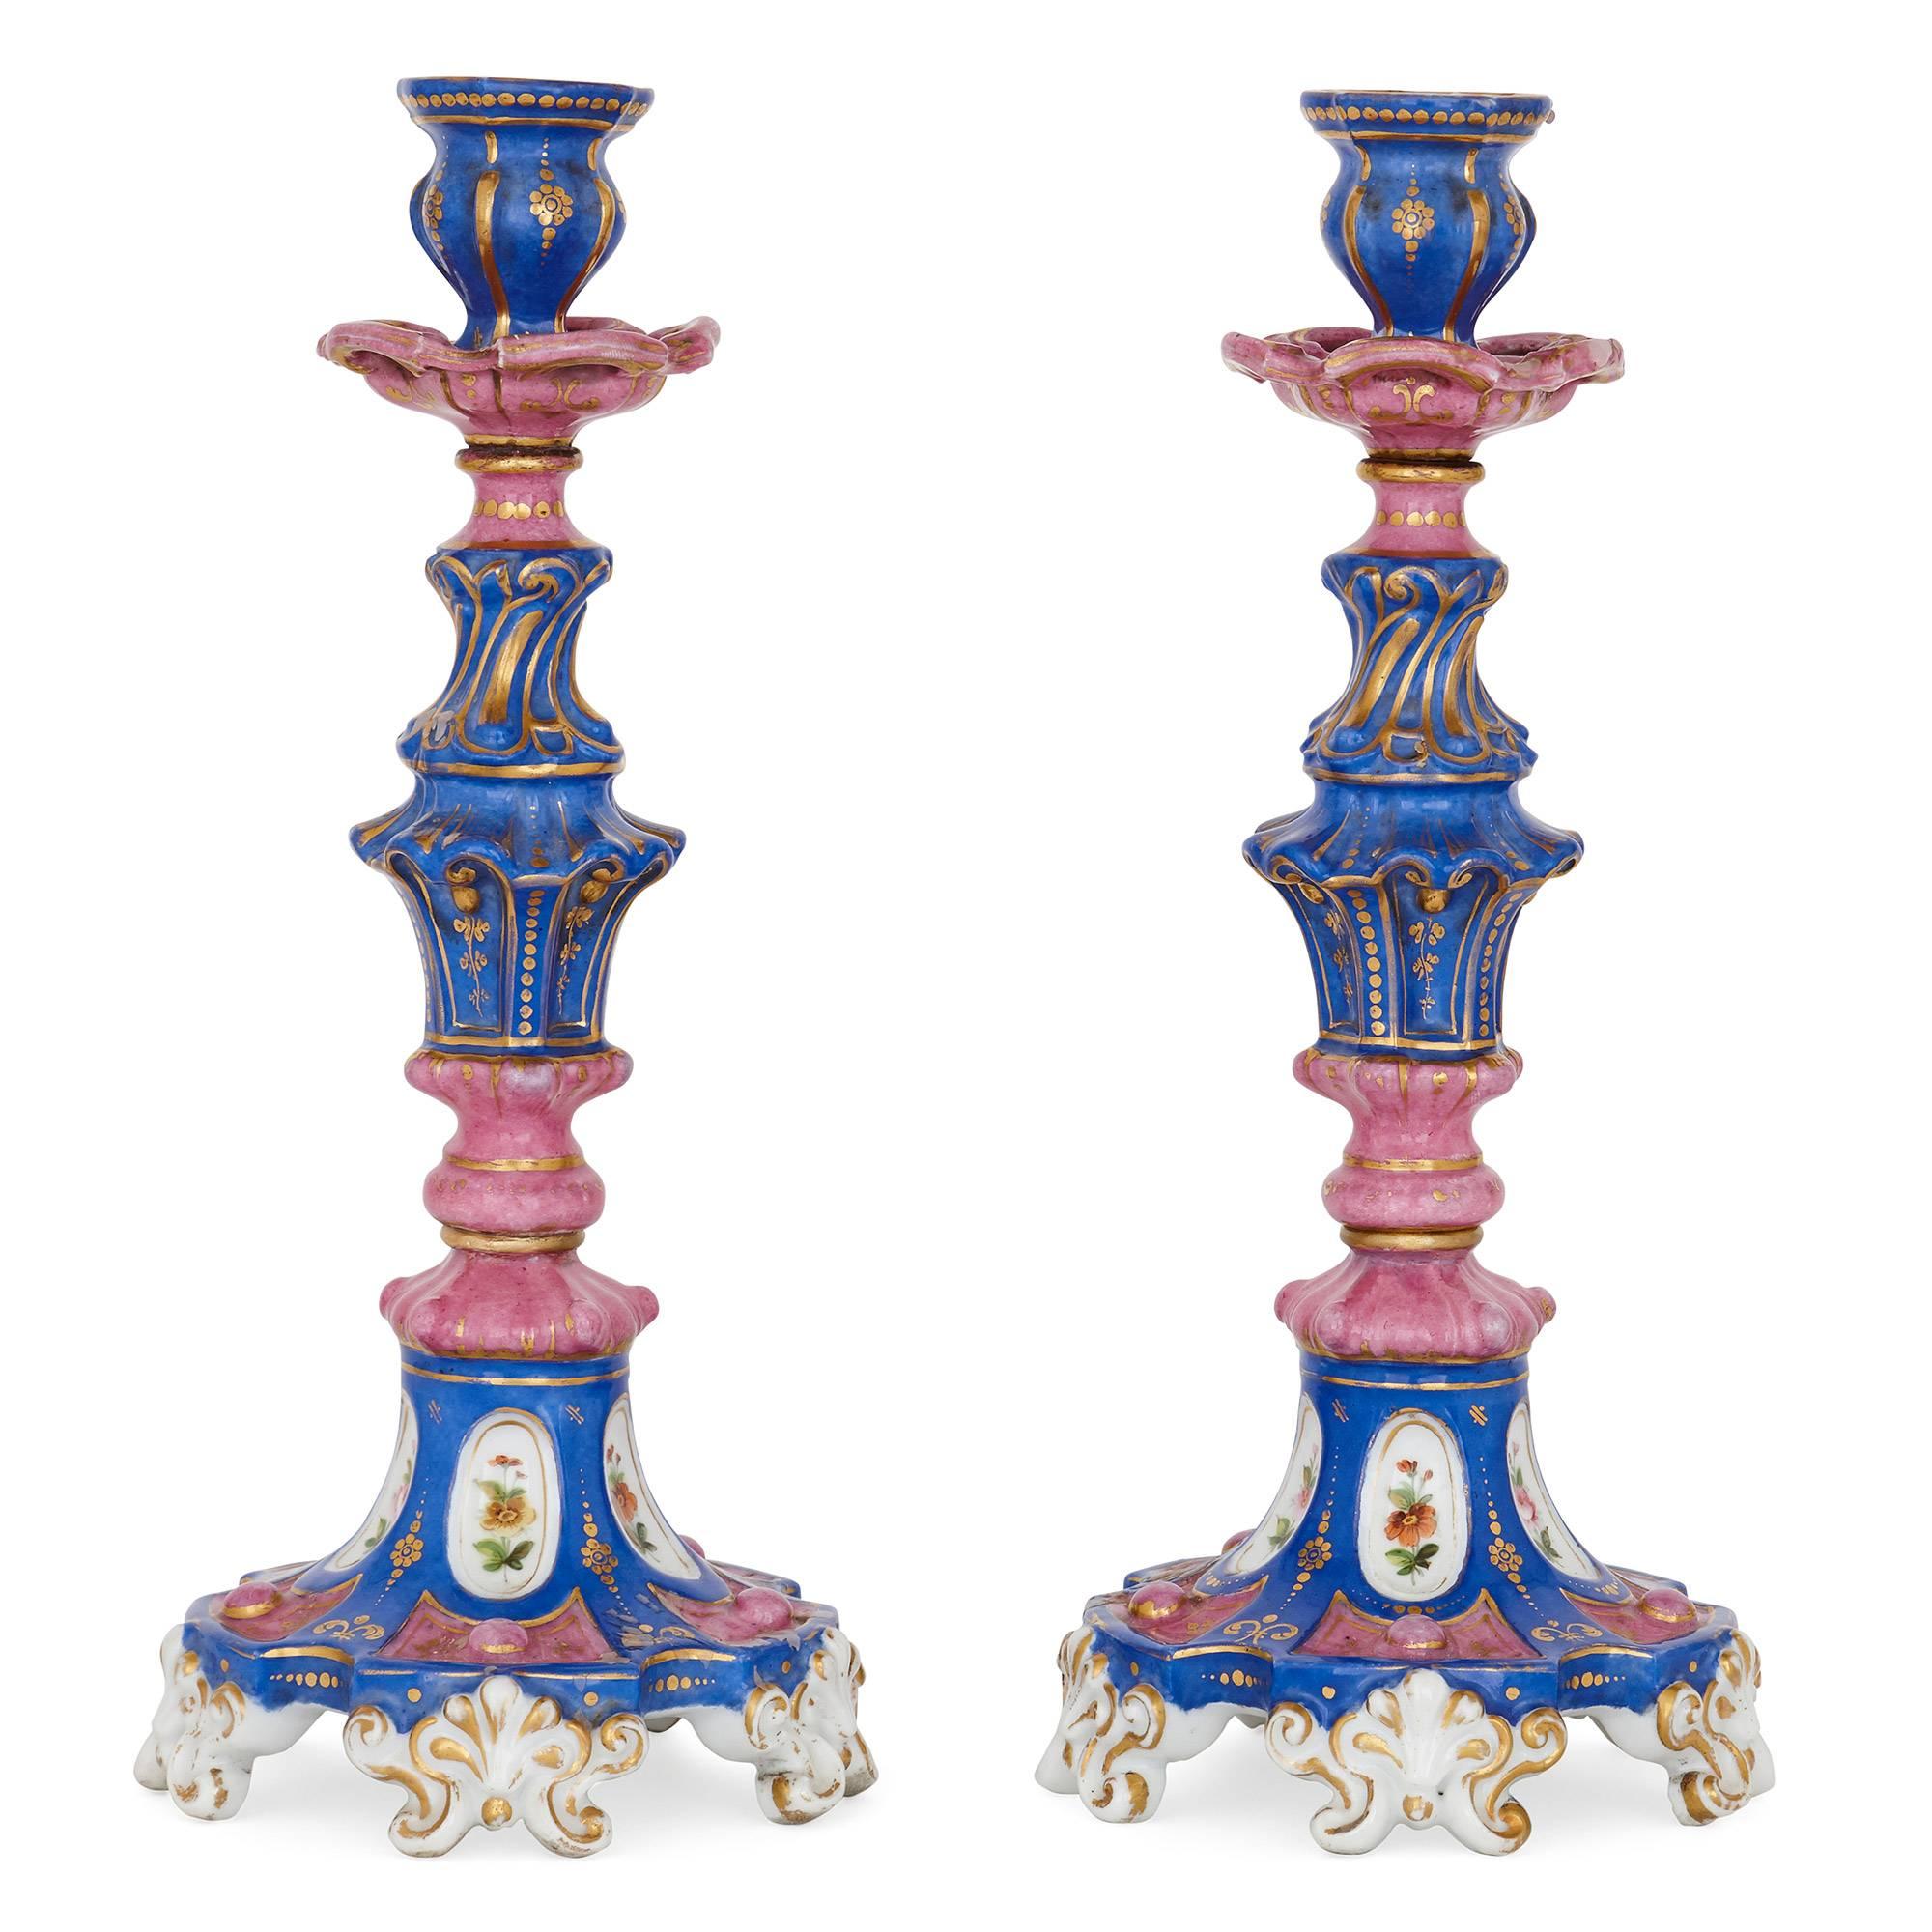 Diese exquisiten Porzellanleuchter wurden im 19. Jahrhundert von der berühmten russischen Popov-Manufaktur hergestellt.

Die Leuchter sind im Stil des Rokoko gehalten. Sie haben geknickte Stiele, die auf gespreizten Sockeln auf blattförmigen Füßen